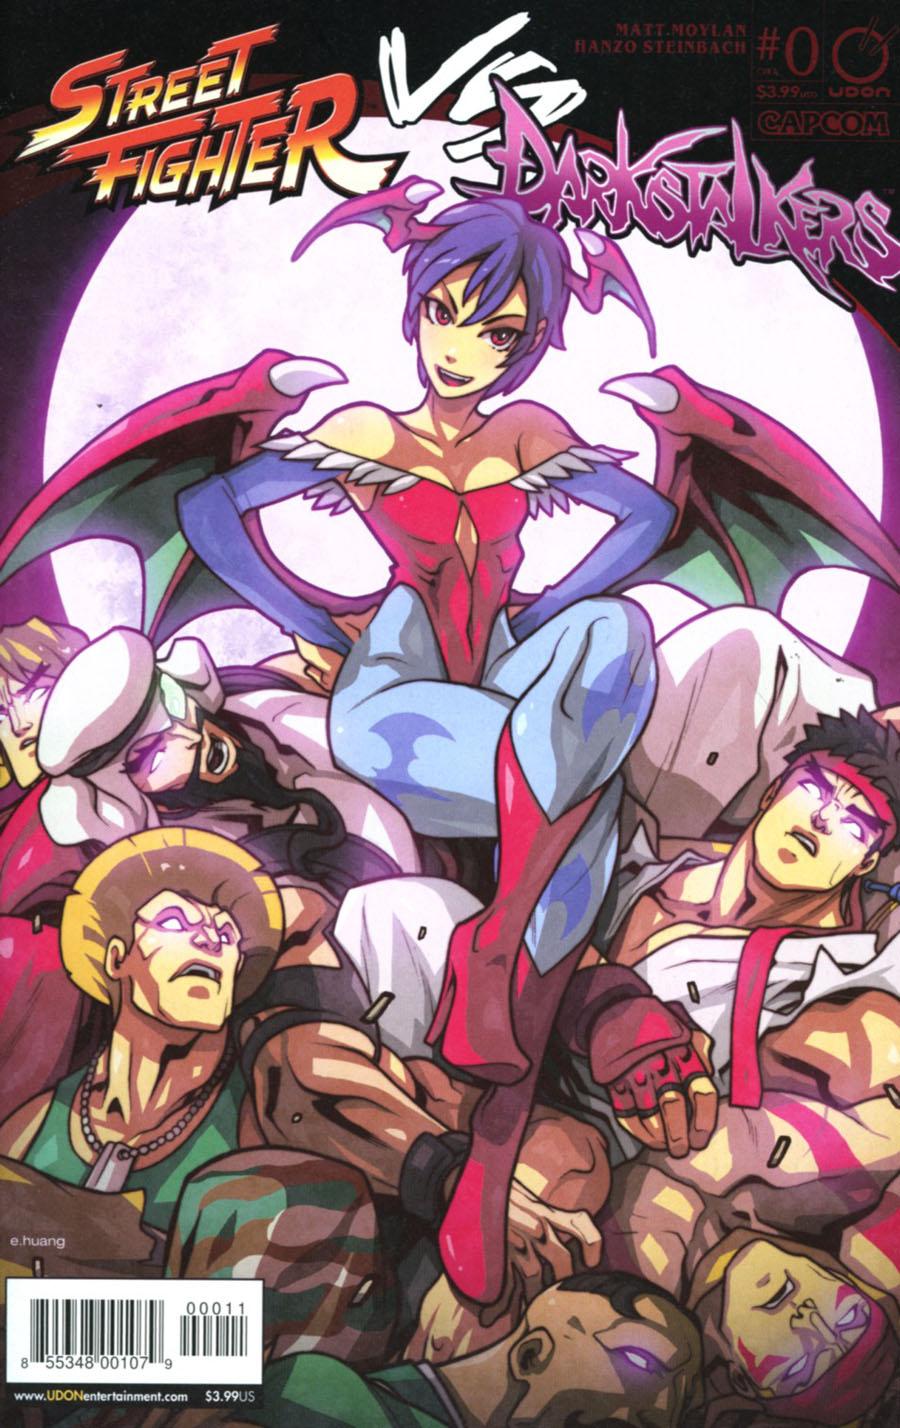 Street Fighter vs Darkstalkers Vol. 1 #0